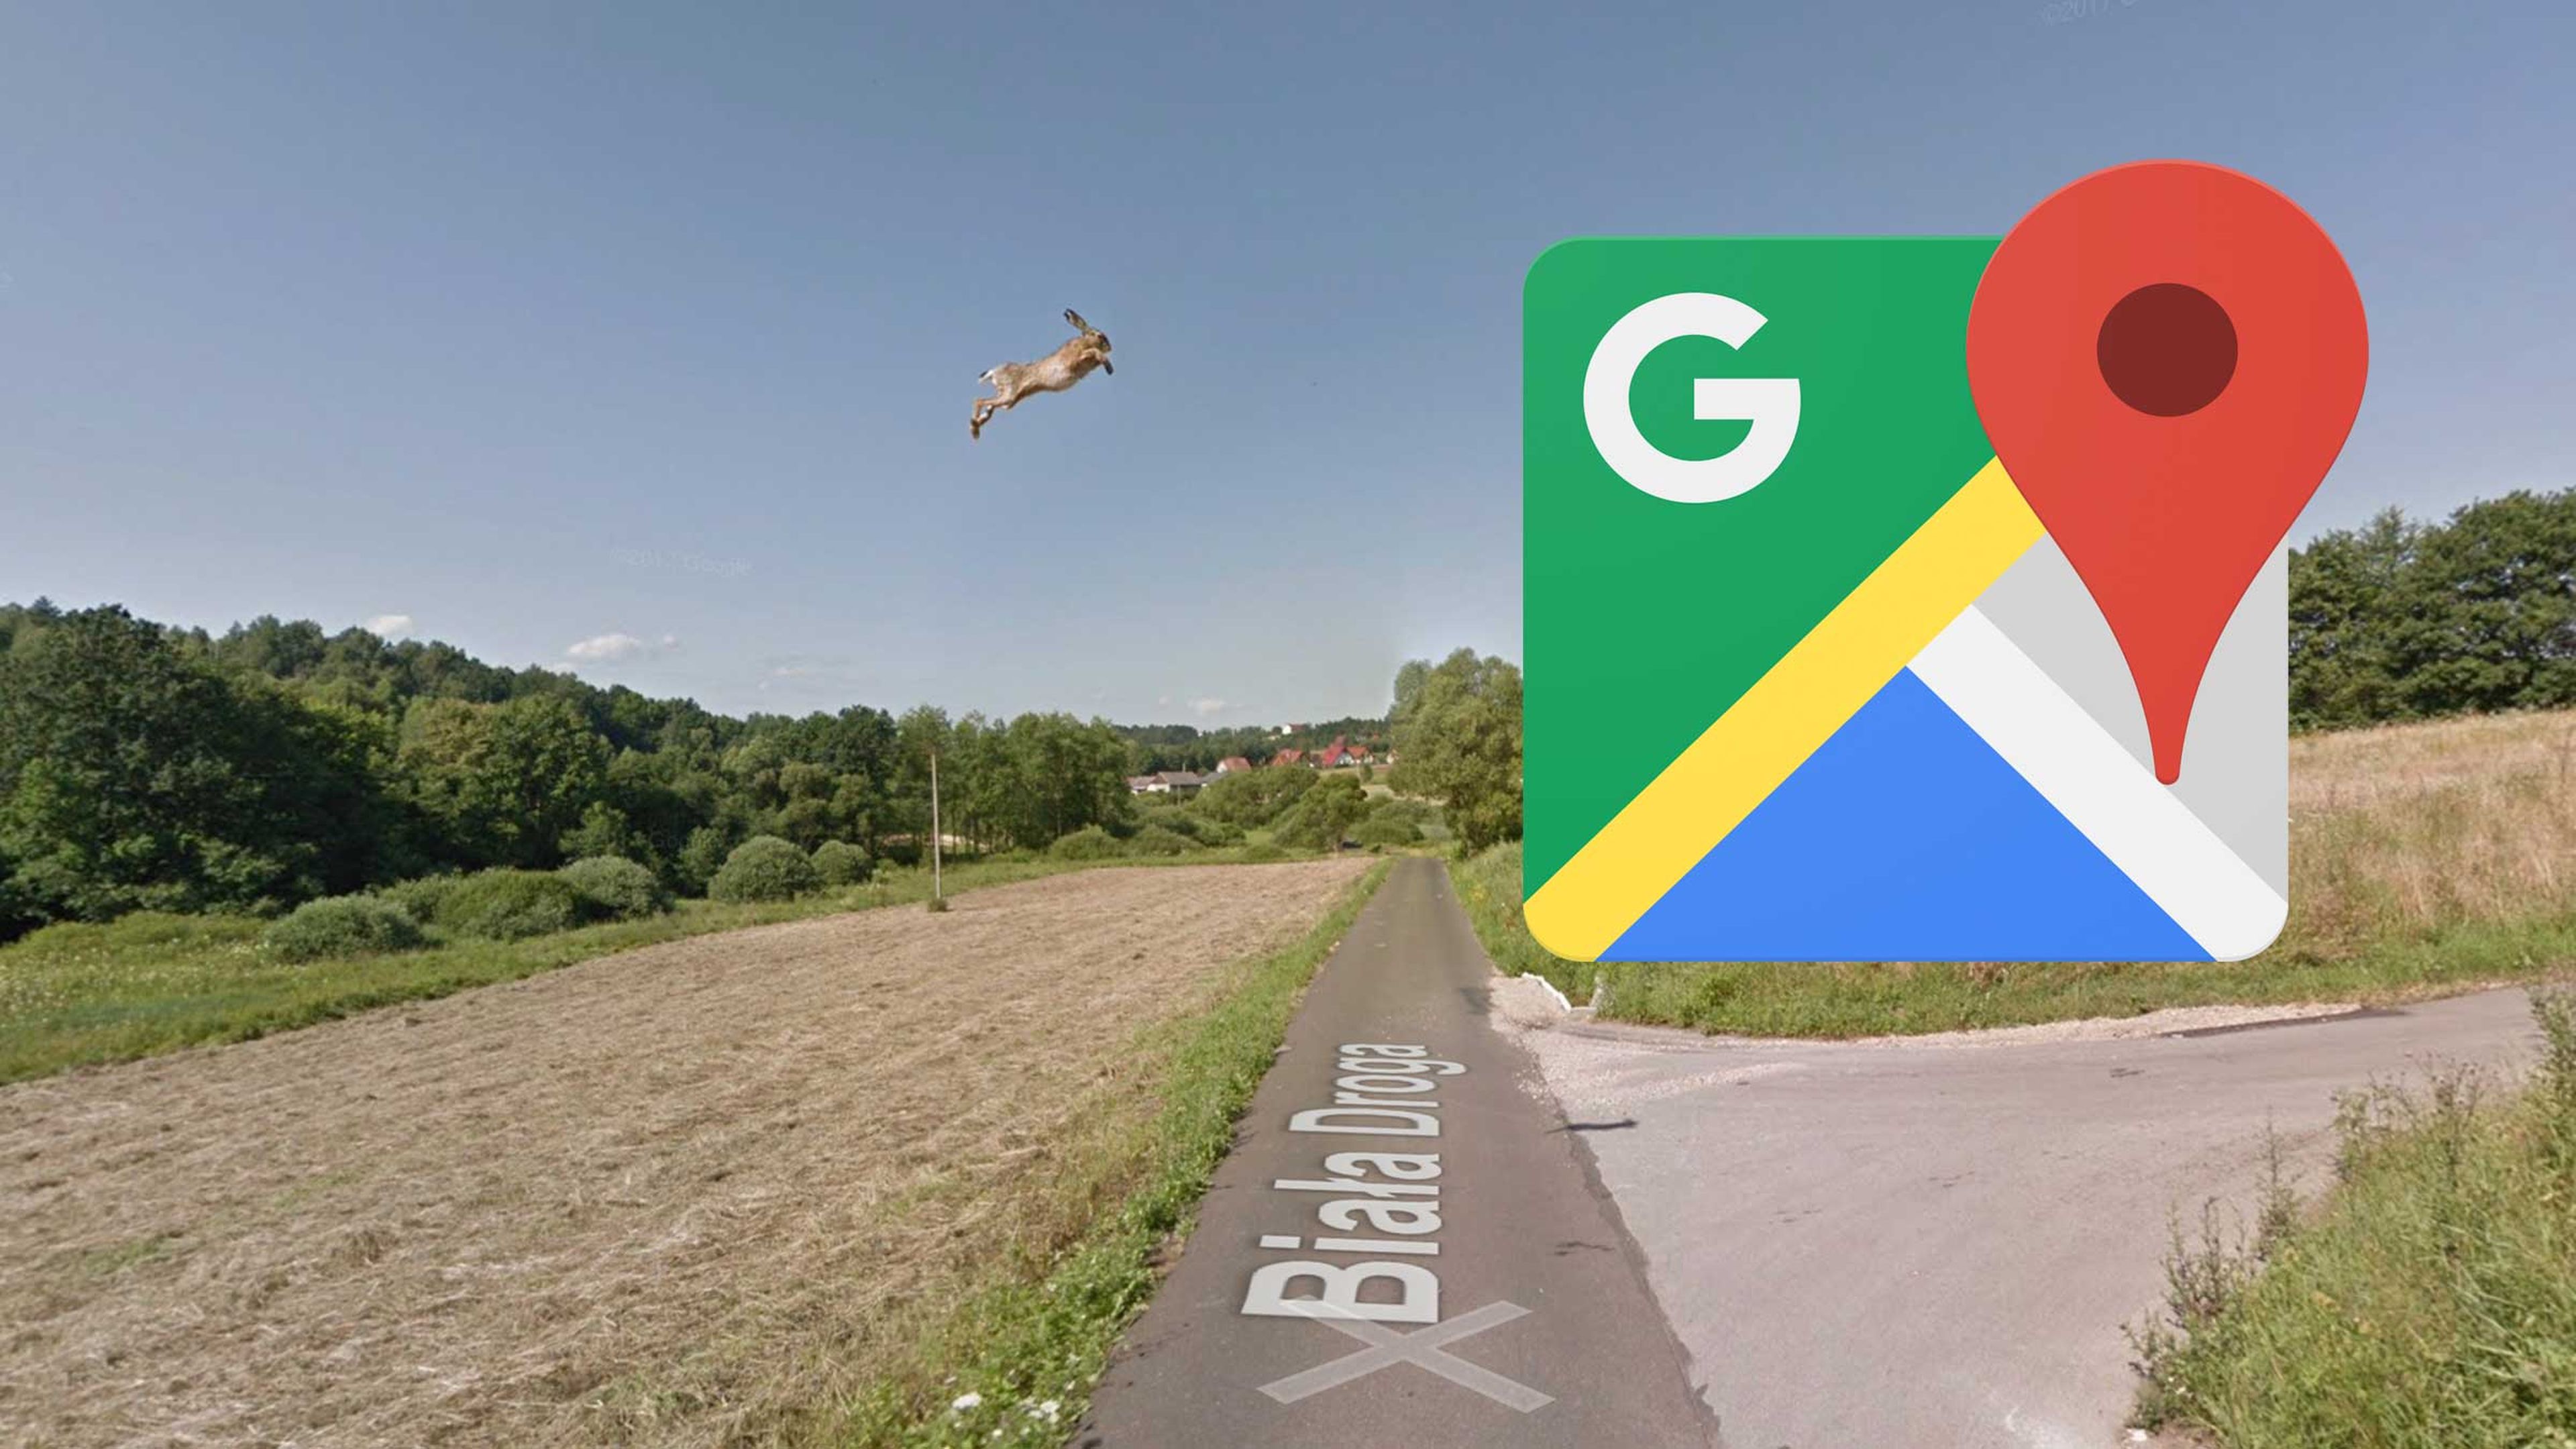 Liebre volando Google Maps